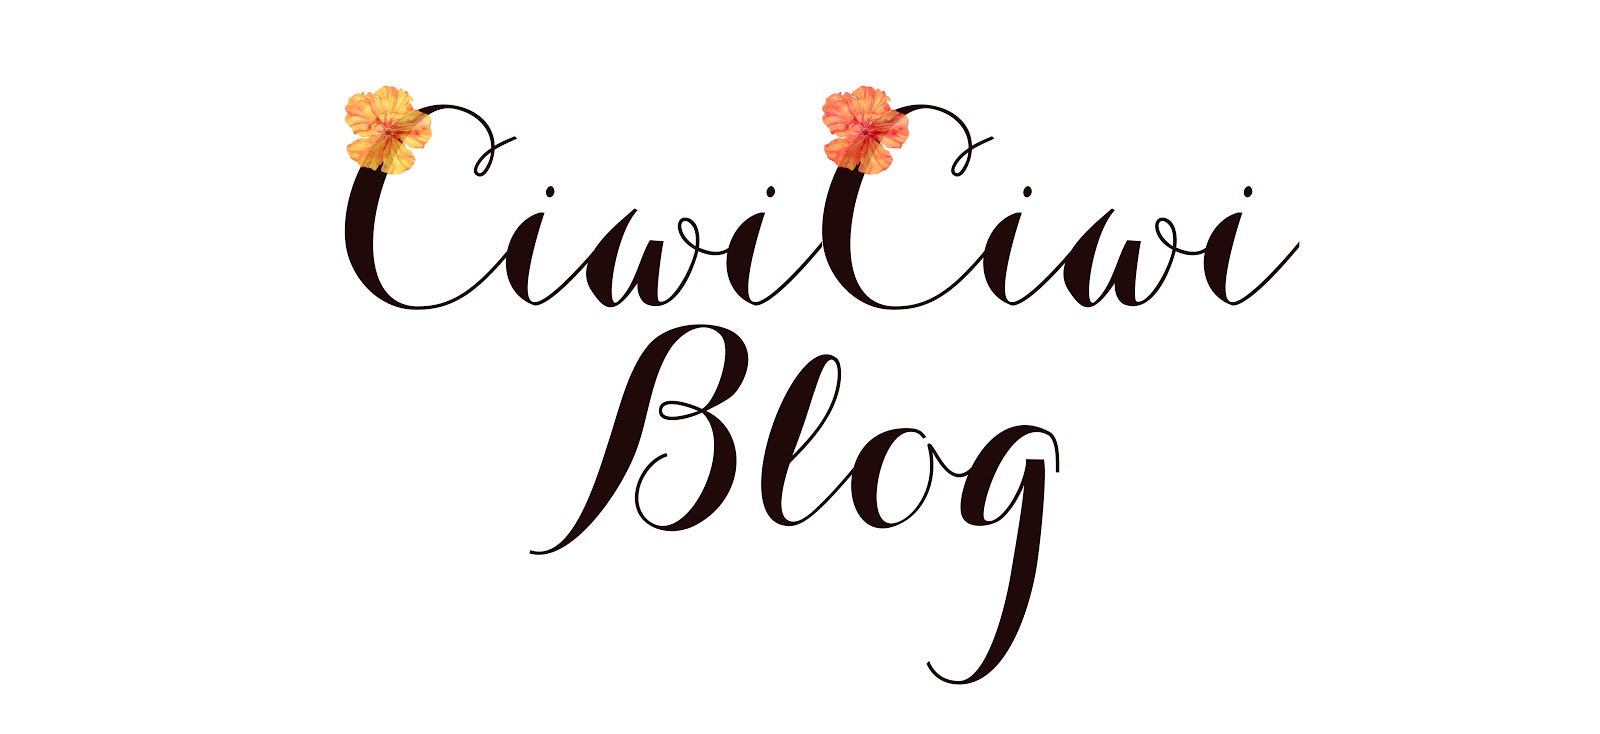 CiwiCiwi Blog